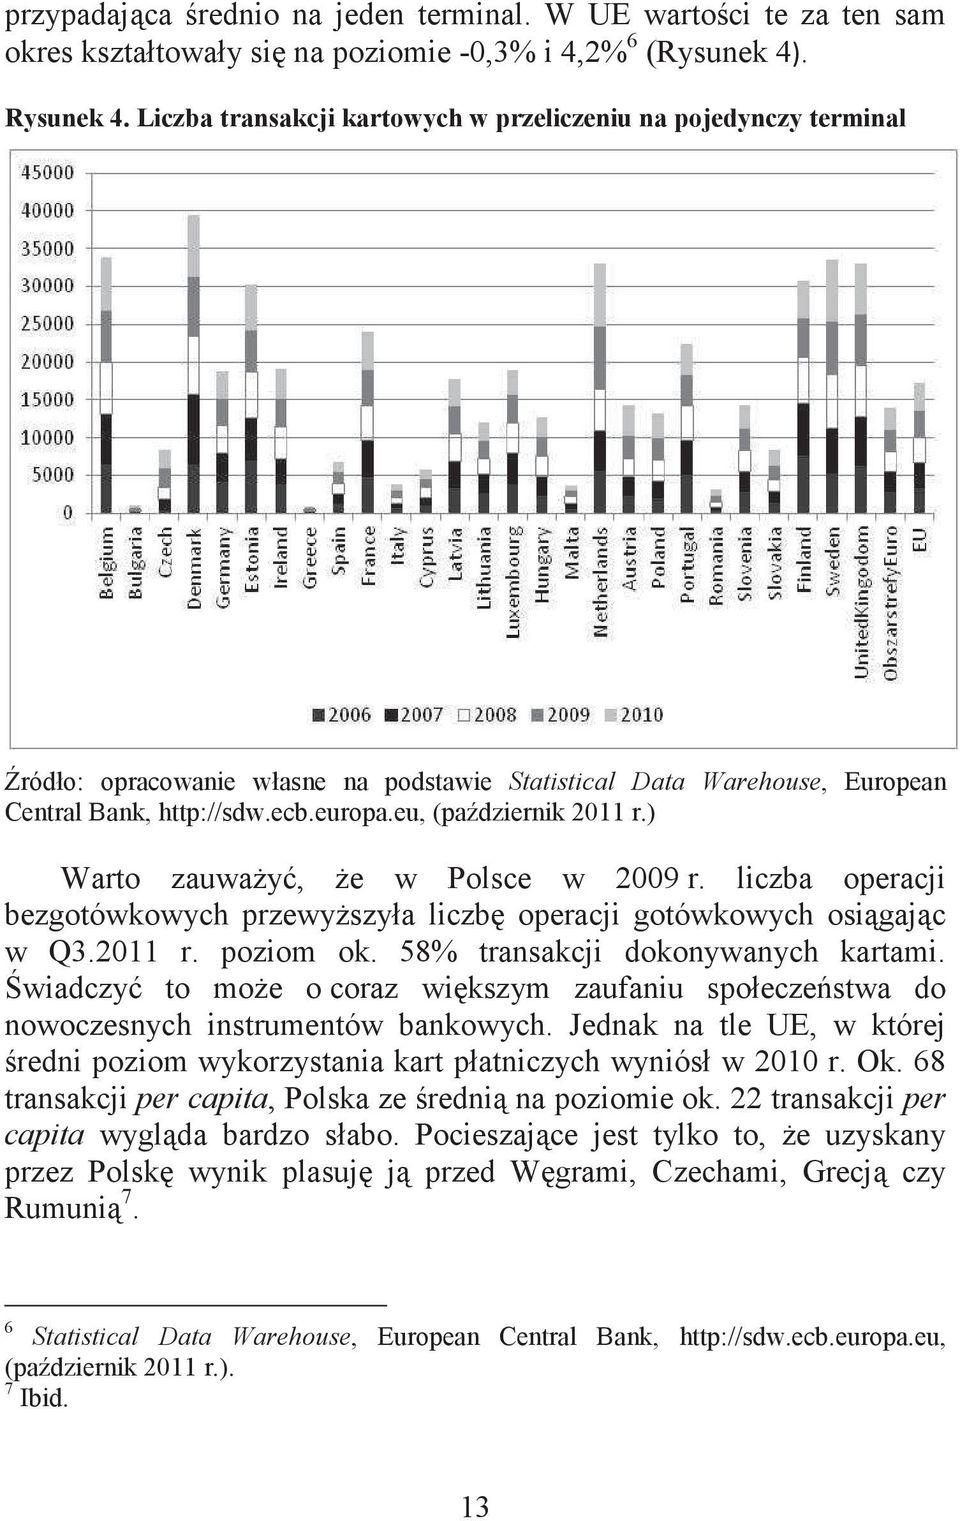 eu, (padziernik 2011 r.) Warto zauway, e w Polsce w 2009 r. liczba operacji bezgotówkowych przewyszyła liczb operacji gotówkowych osigajc w Q3.2011 r. poziom ok. 58% transakcji dokonywanych kartami.